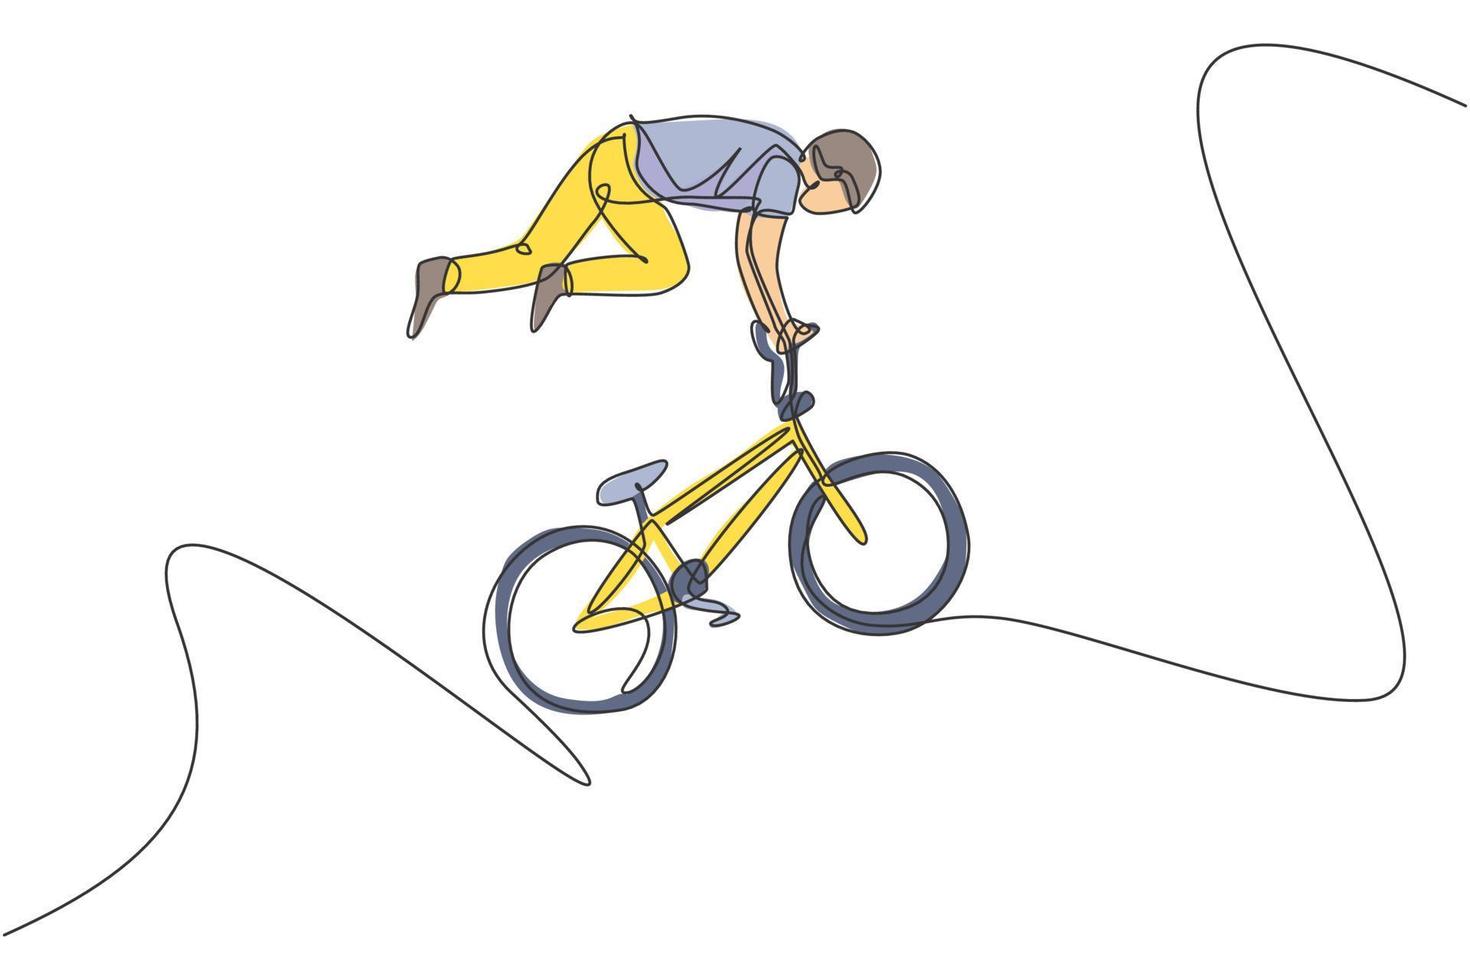 en kontinuerlig linjeteckning av ung bmx-cykelförare gör flygande på lufttricket på skatepark. extrem sport koncept vektor illustration. dynamisk enda rad rita design för event marknadsföring affisch